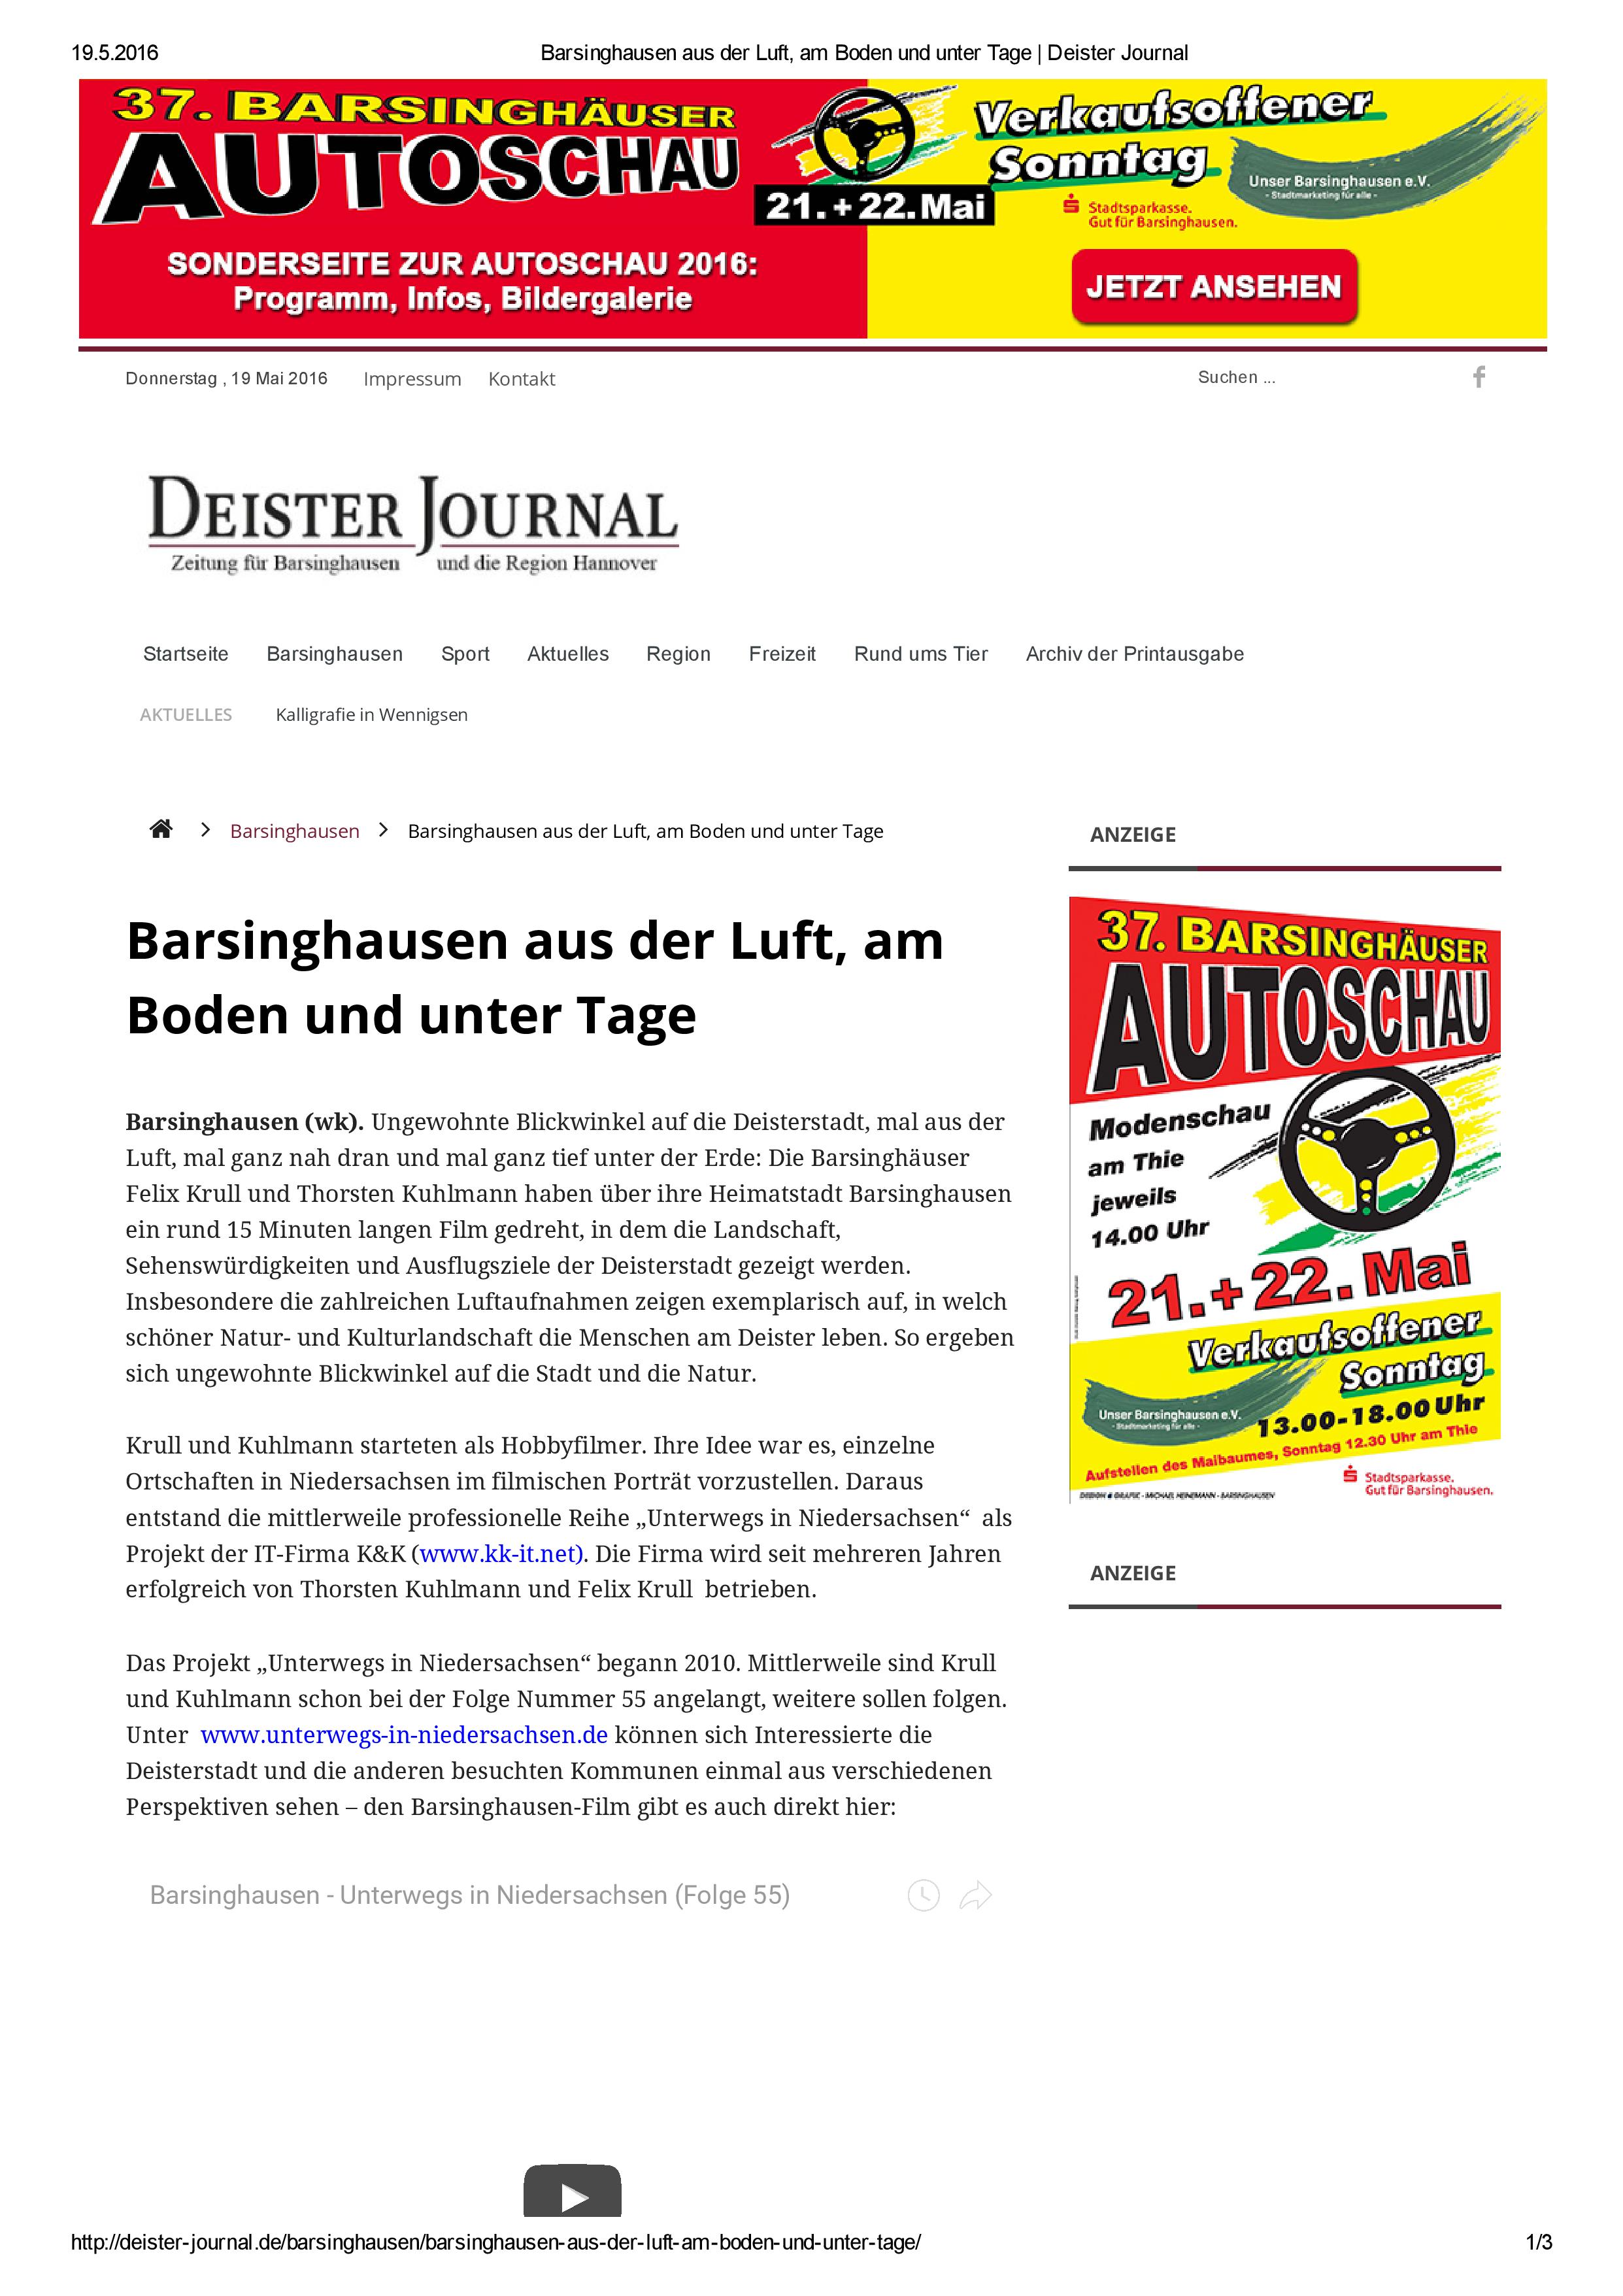 Barsinghausen aus der Luft, am Boden und unter Tage